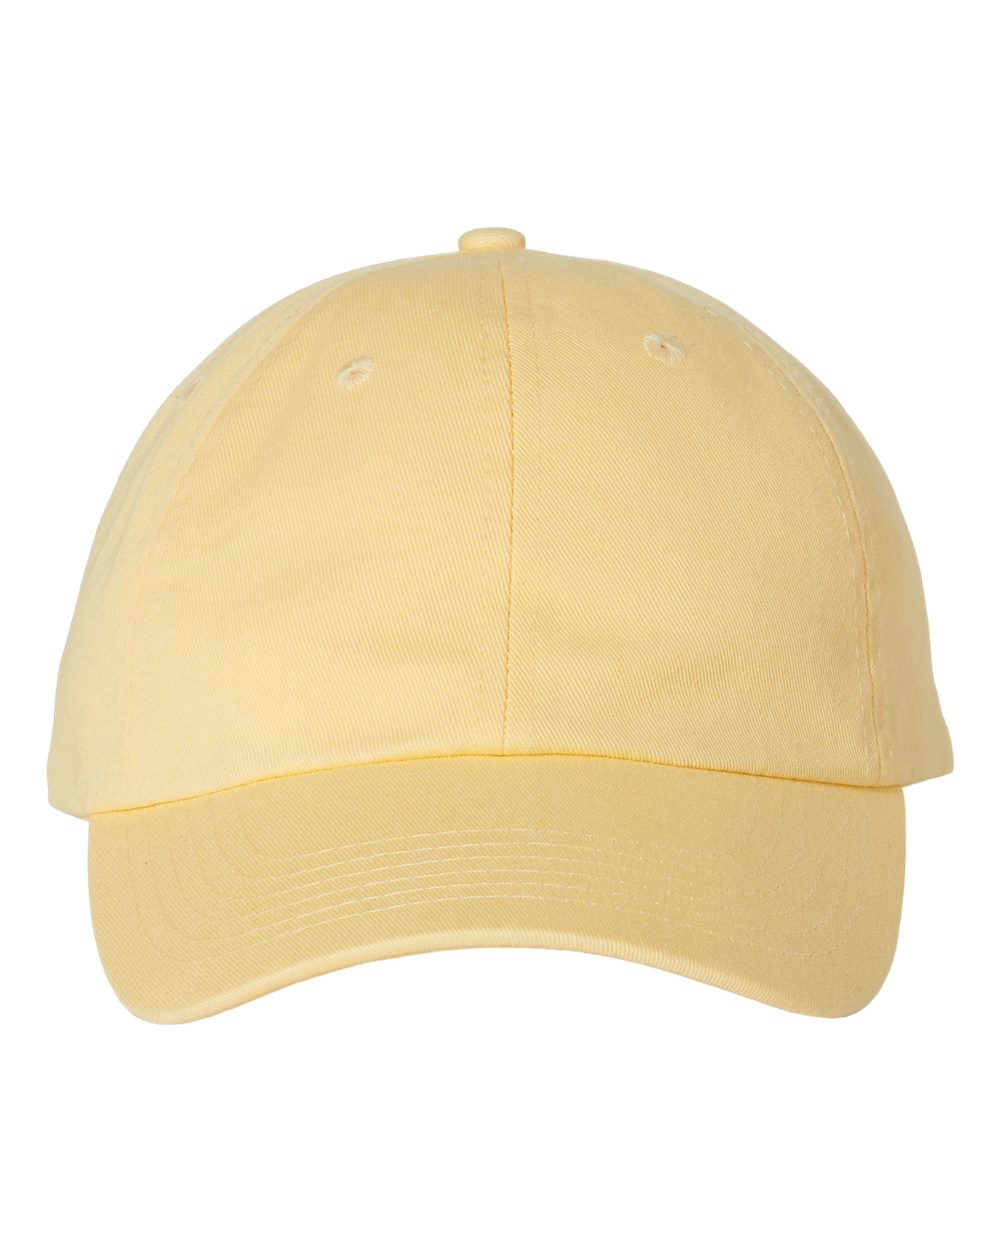 butter baseball cap